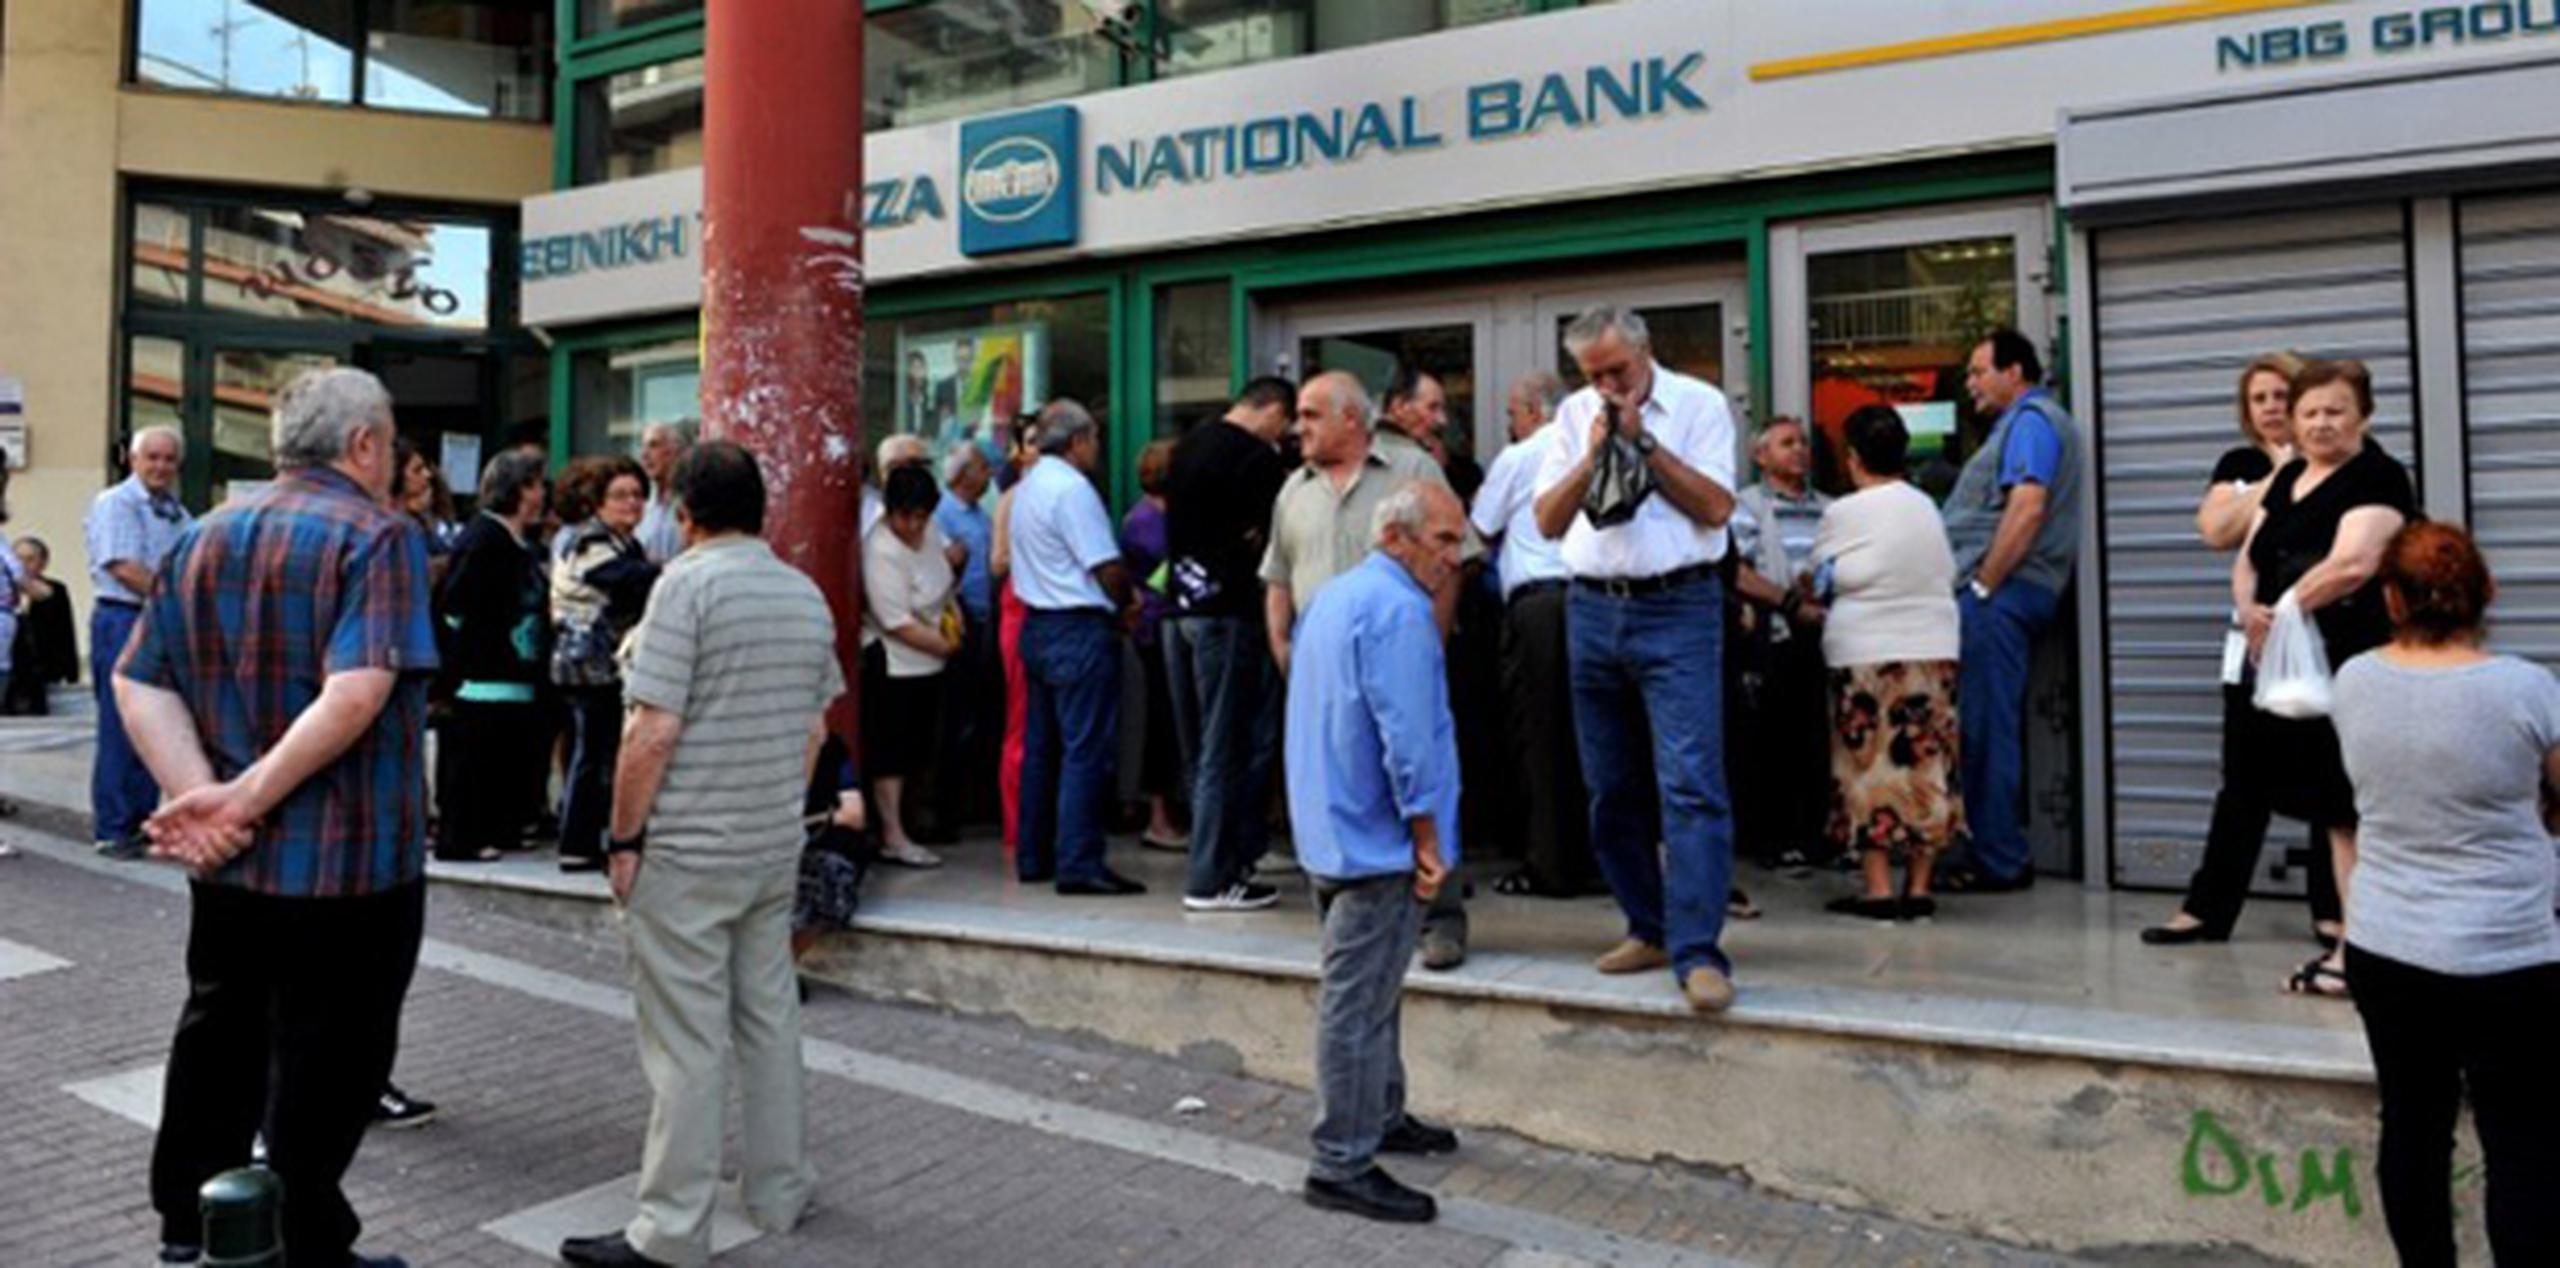 El cierre de los bancos se decretó luego de que los griegos agotasen los fondos de los cajeros automáticos durante el fin de semana. (AFP)